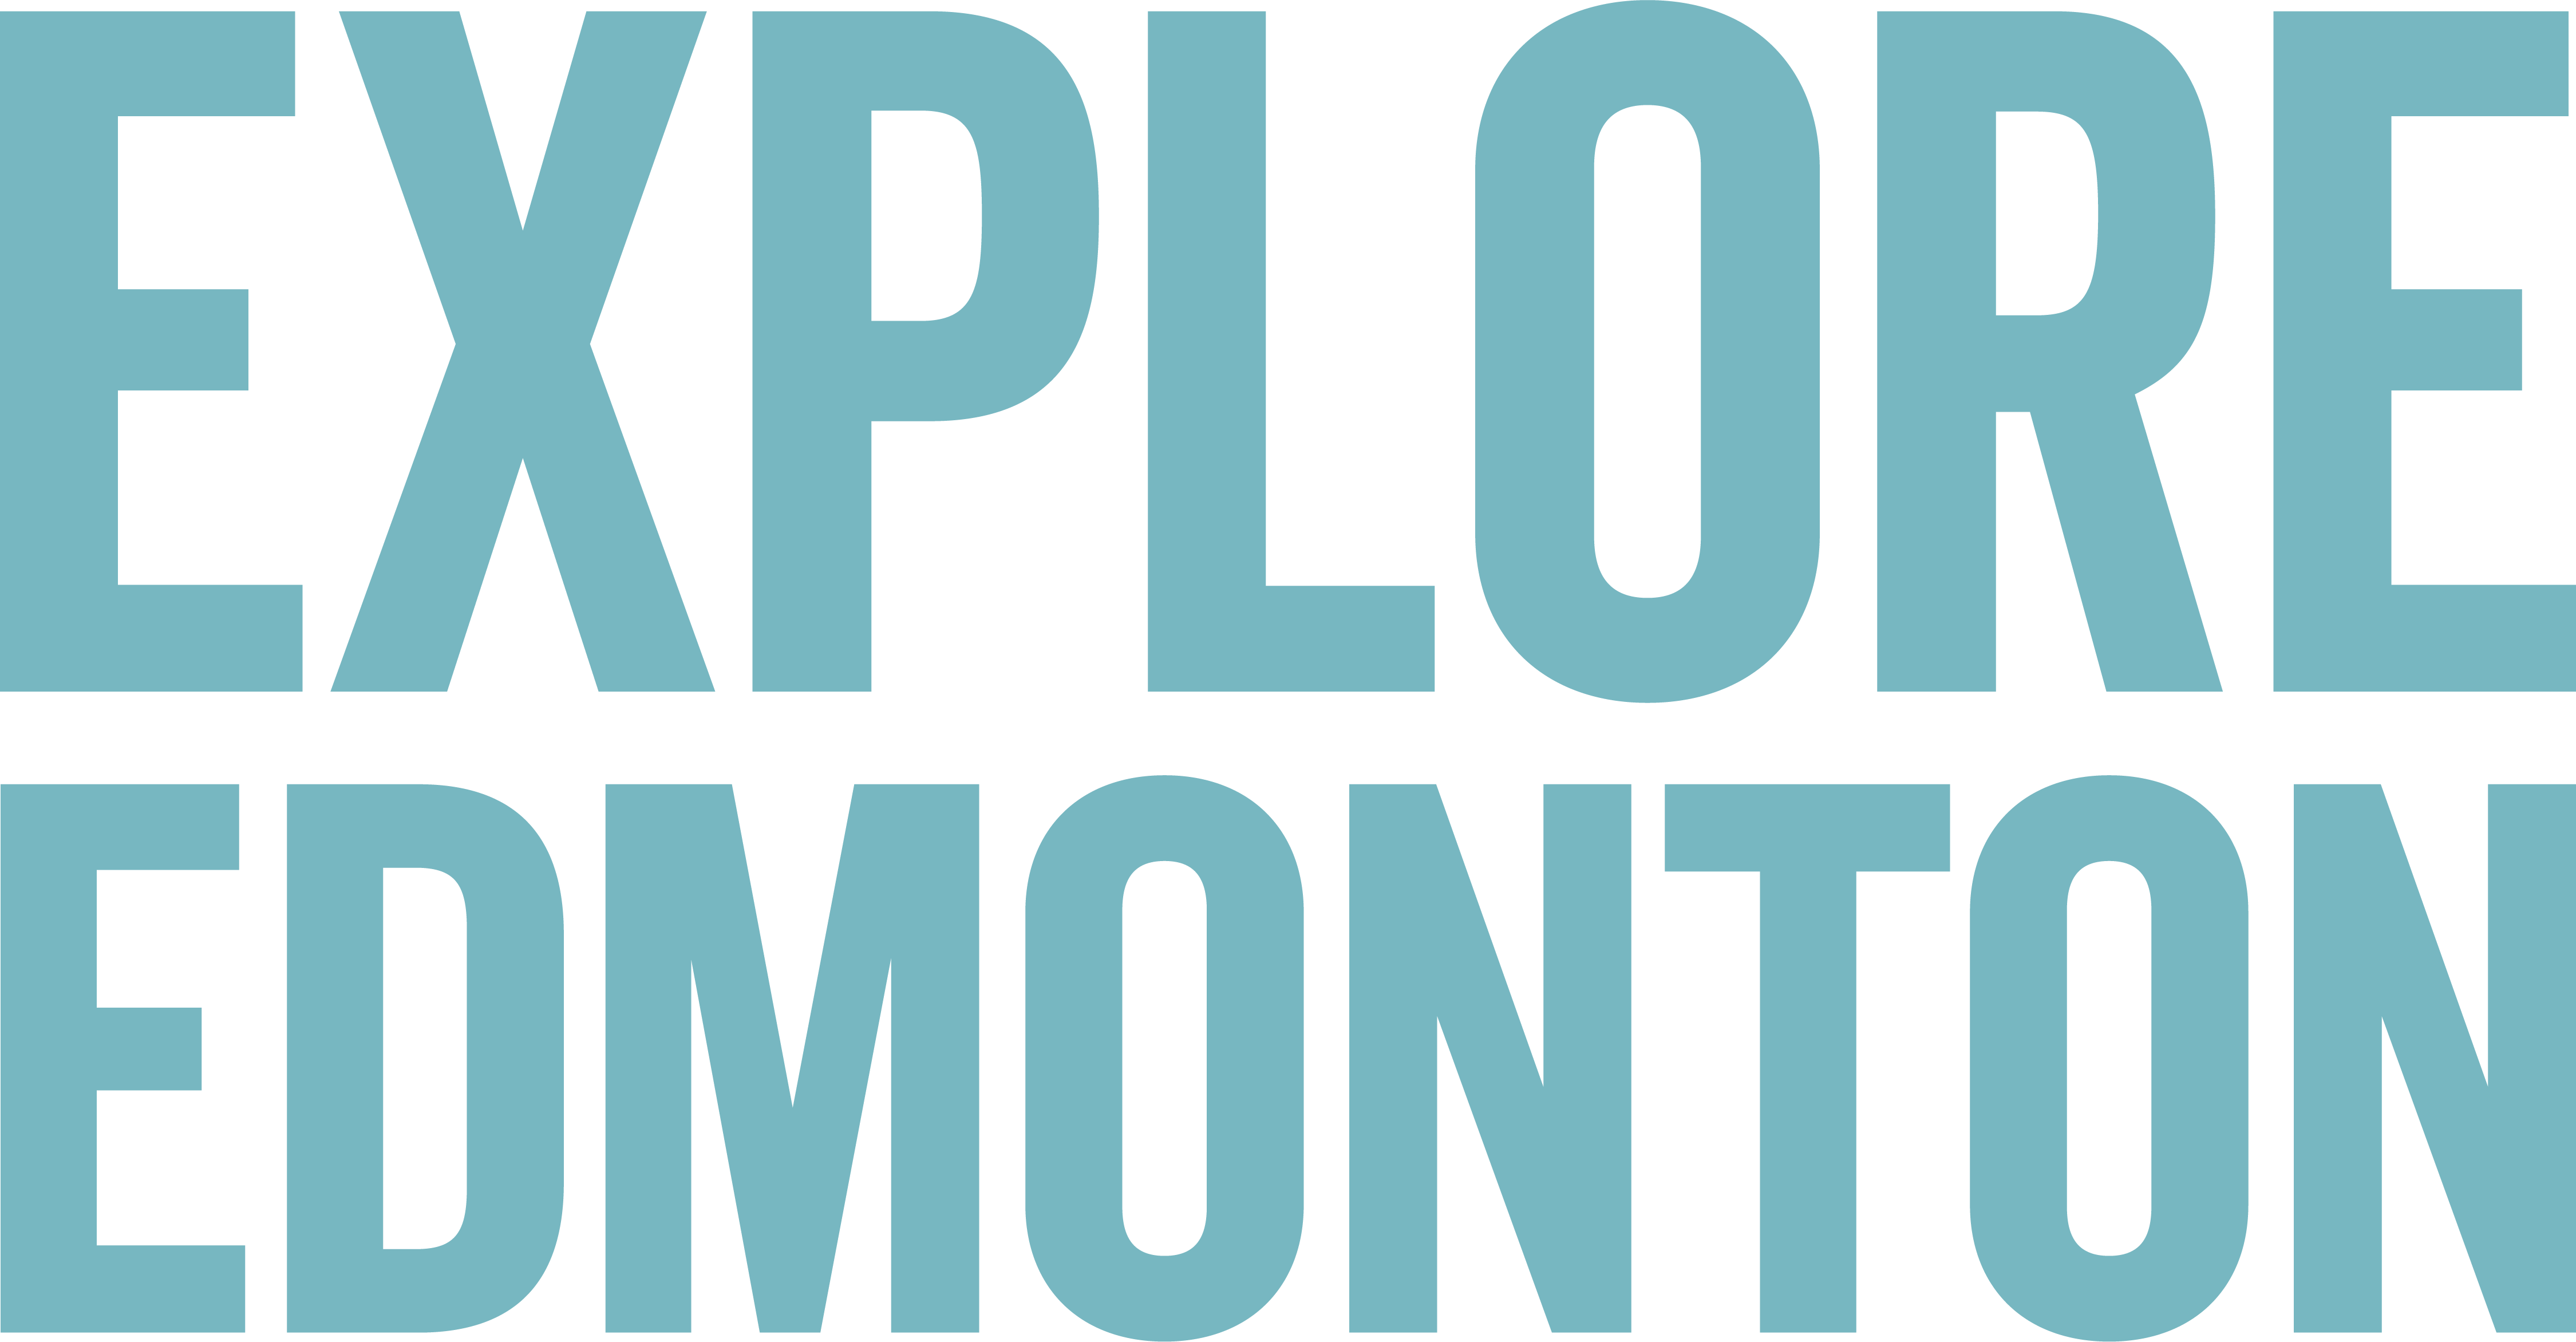 Explore edmonton logo